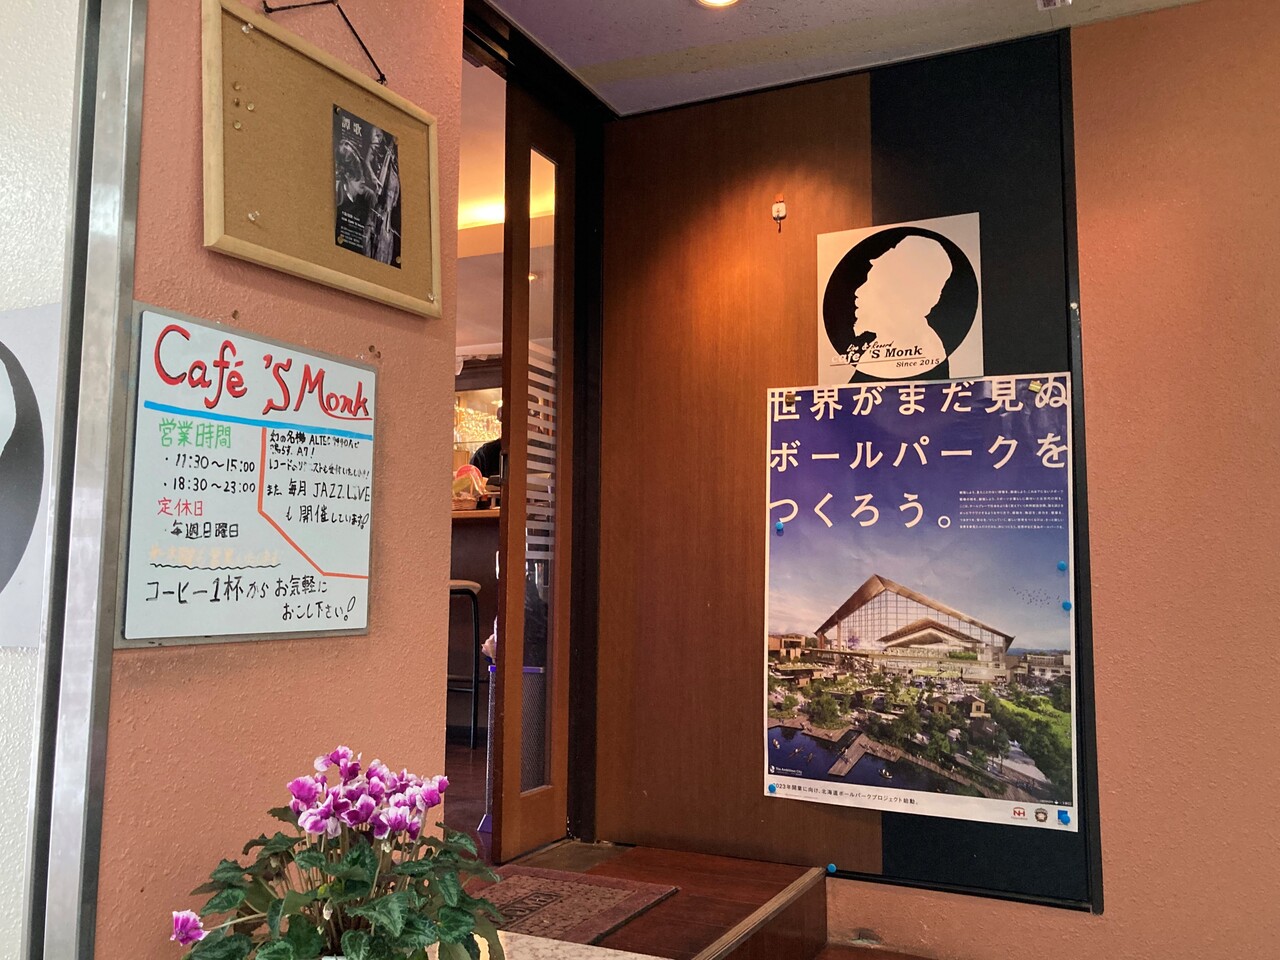 大音量でジャズが流れているお洒落なカフェだけどお料理は家庭的な一面も 北広島 Cafe S Monk さんで S Monk カレー大盛り Rubis Life